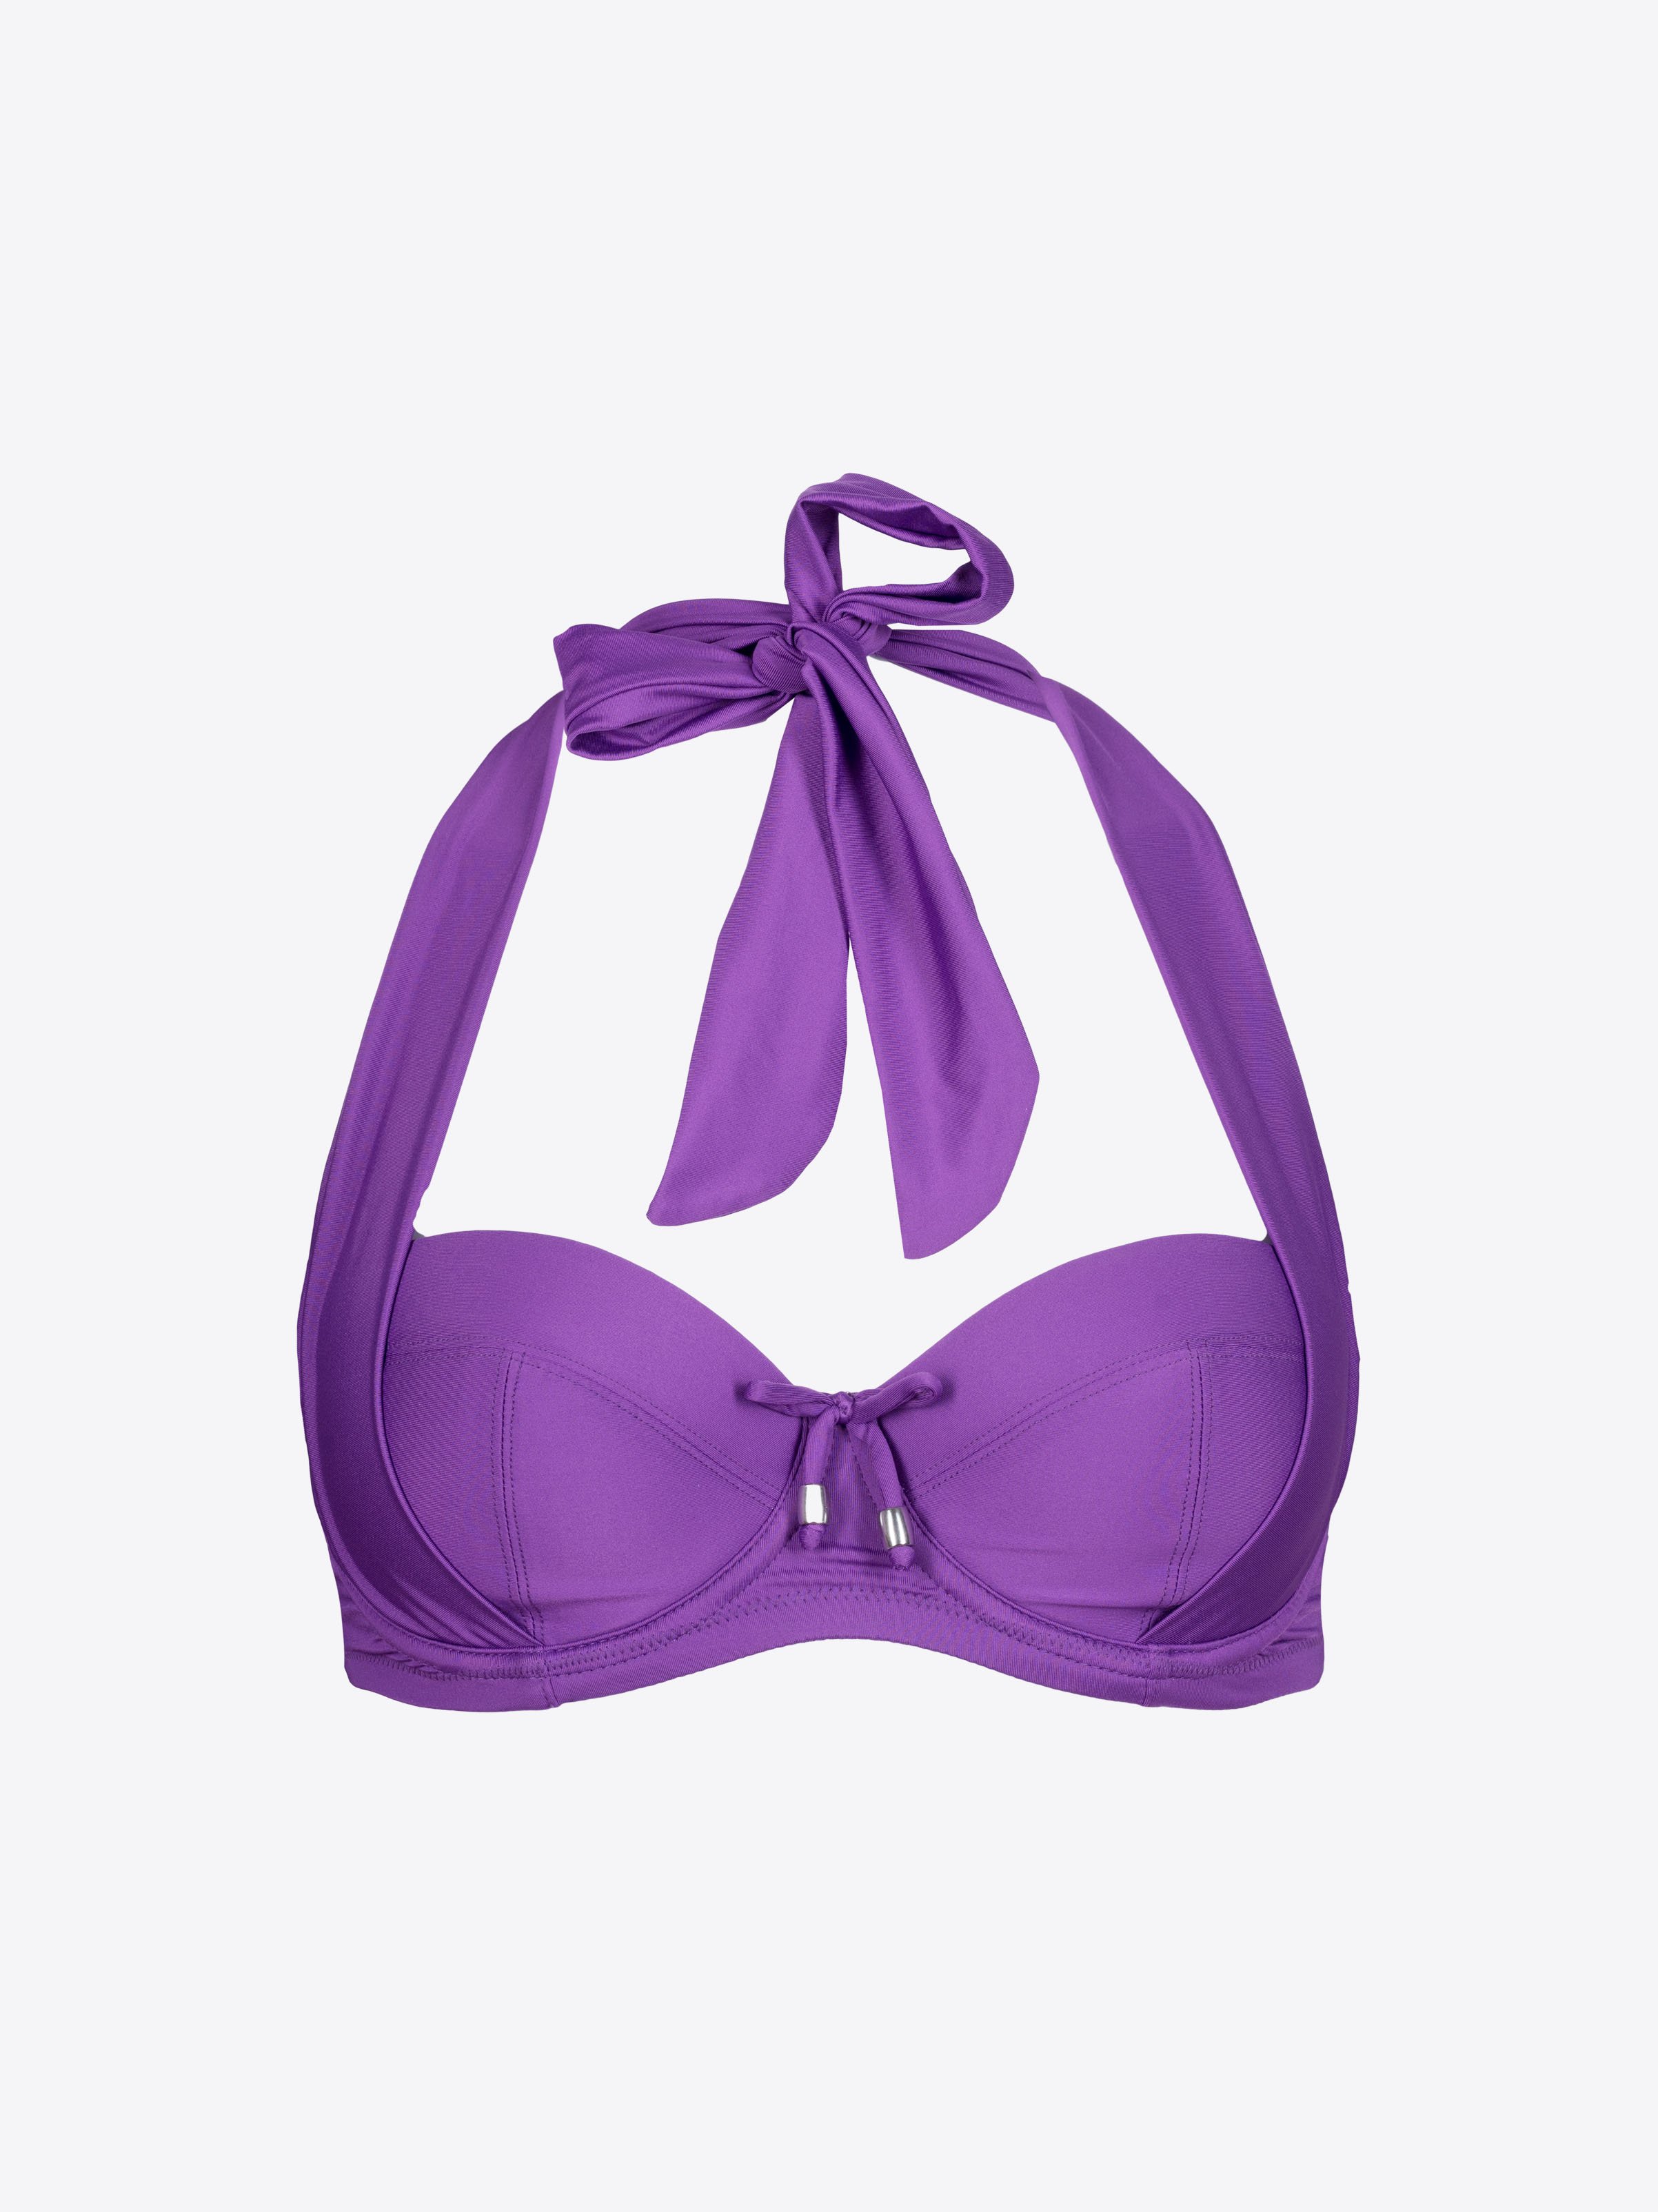 Marisol Bandeau Bikini Top - Bright Violet - $44.75 - CHANGE Lingerie